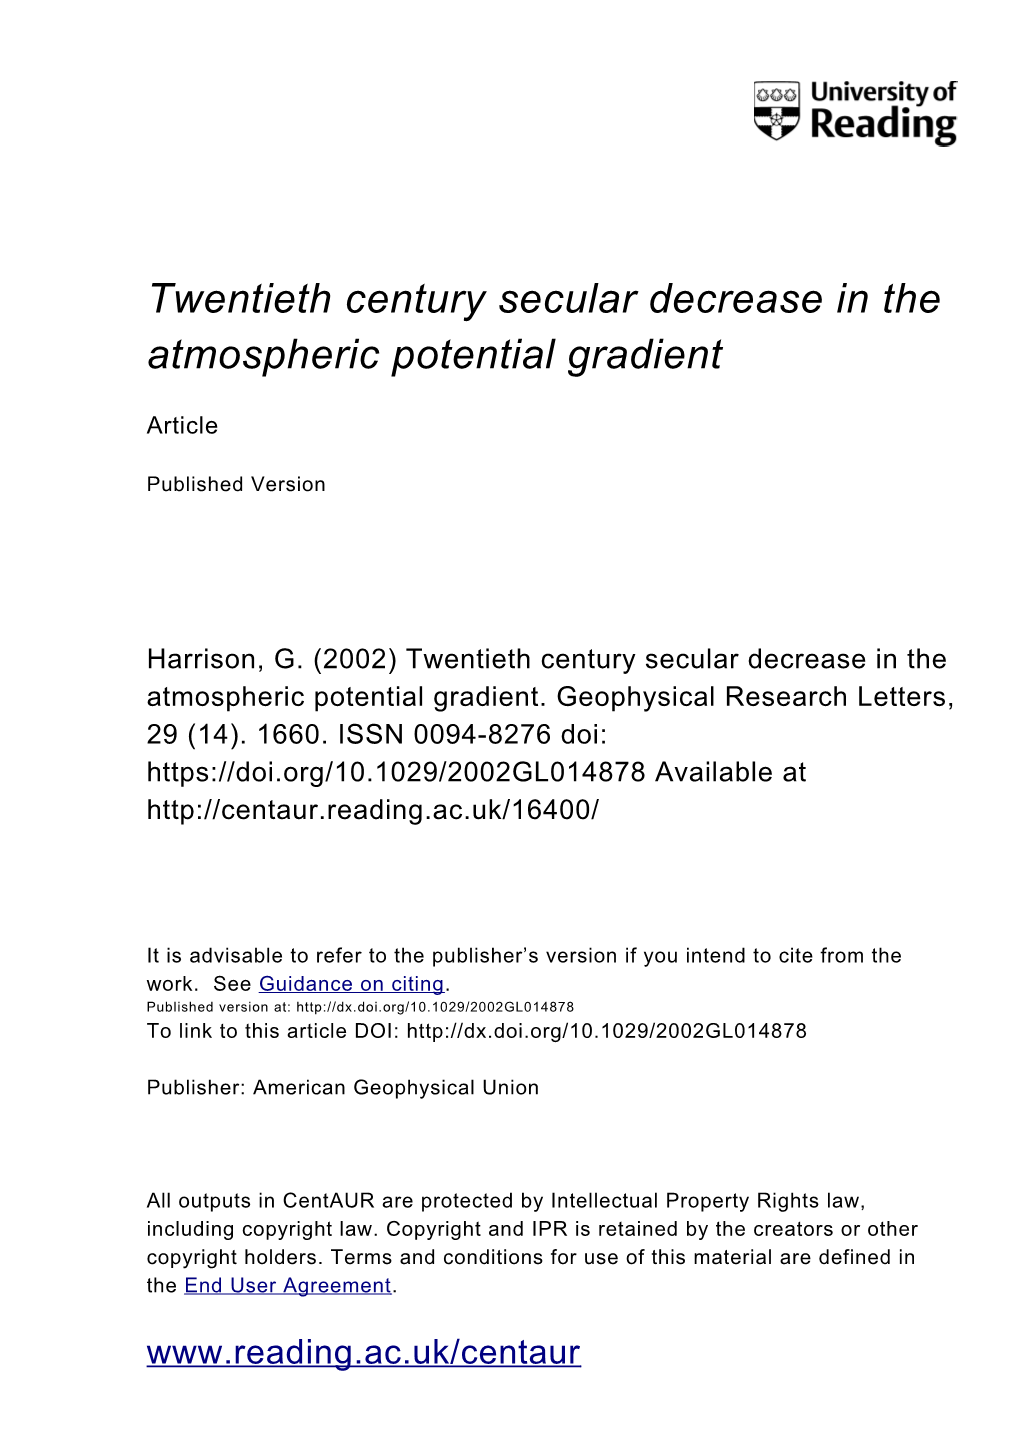 Twentieth Century Secular Decrease in the Atmospheric Potential Gradient